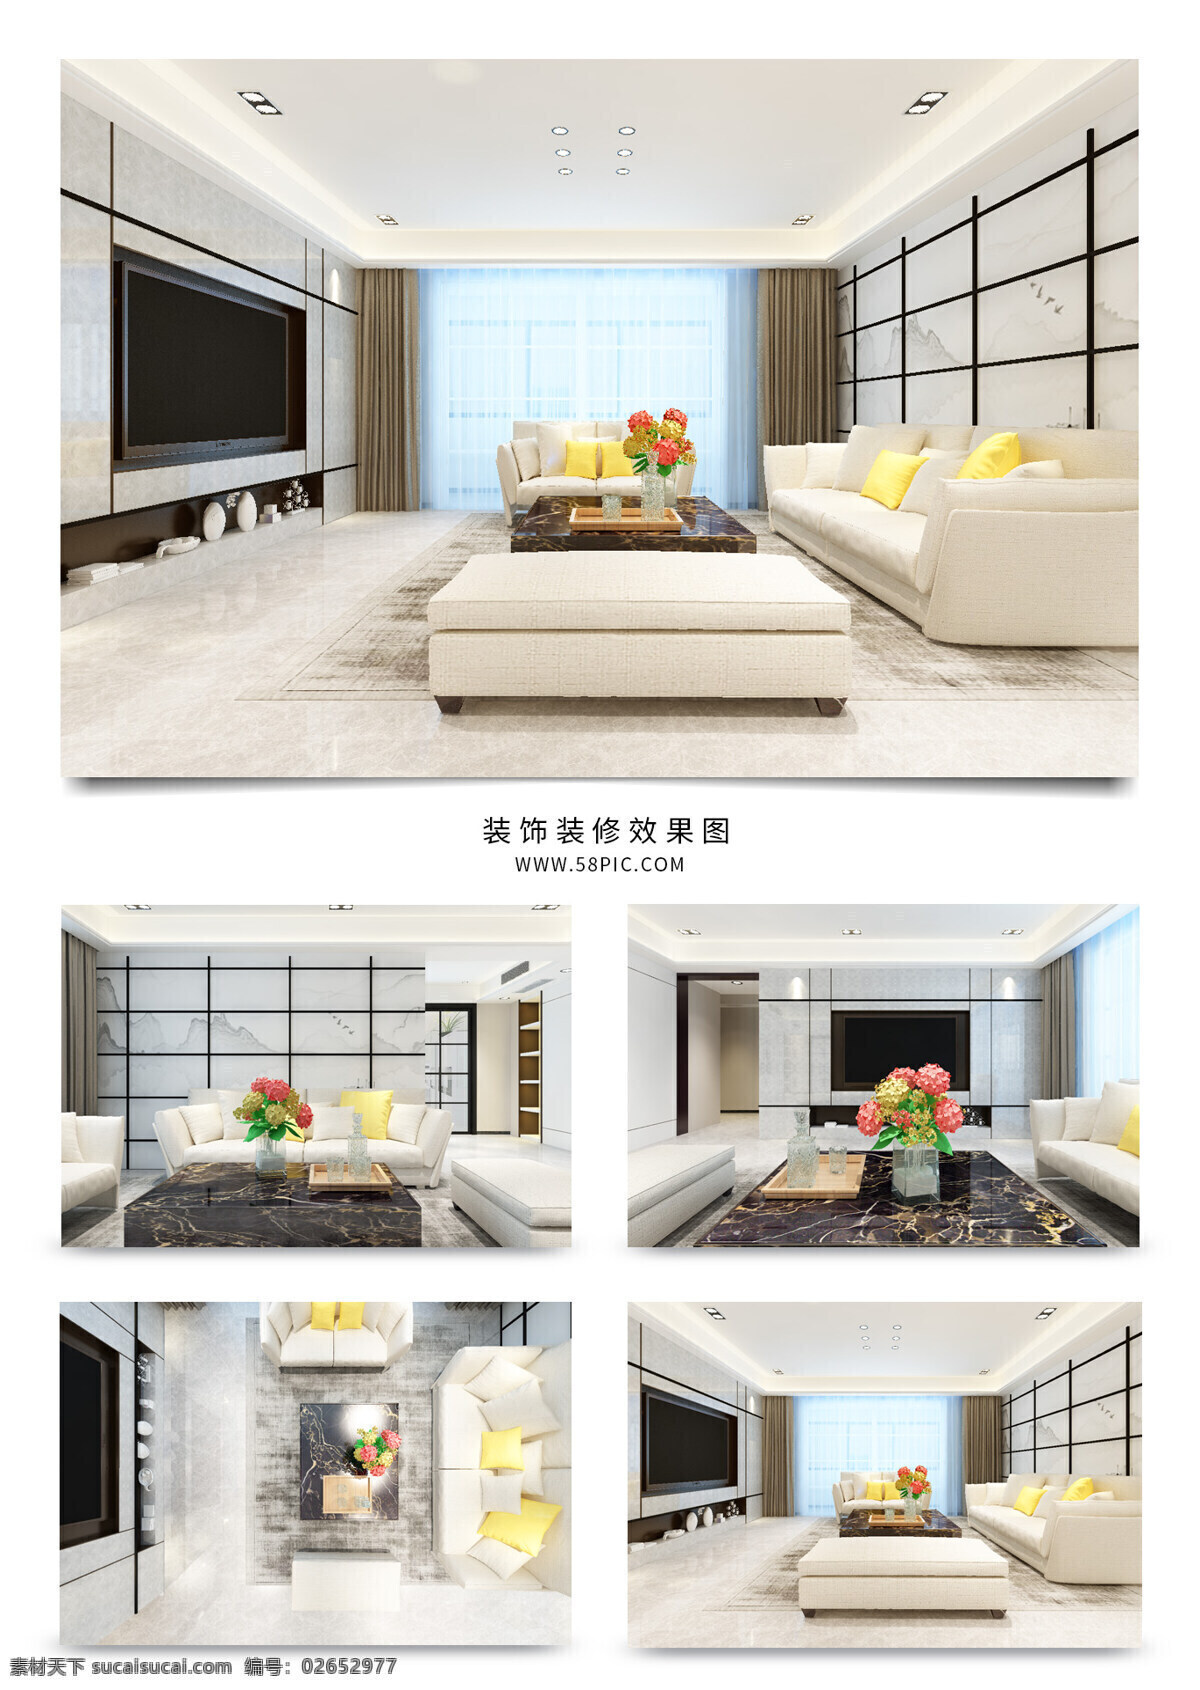 现代 客厅 方格 电视 背景 墙 室内装修 效果图 客厅装修 灰色地板 黄色背景墙 白色沙发